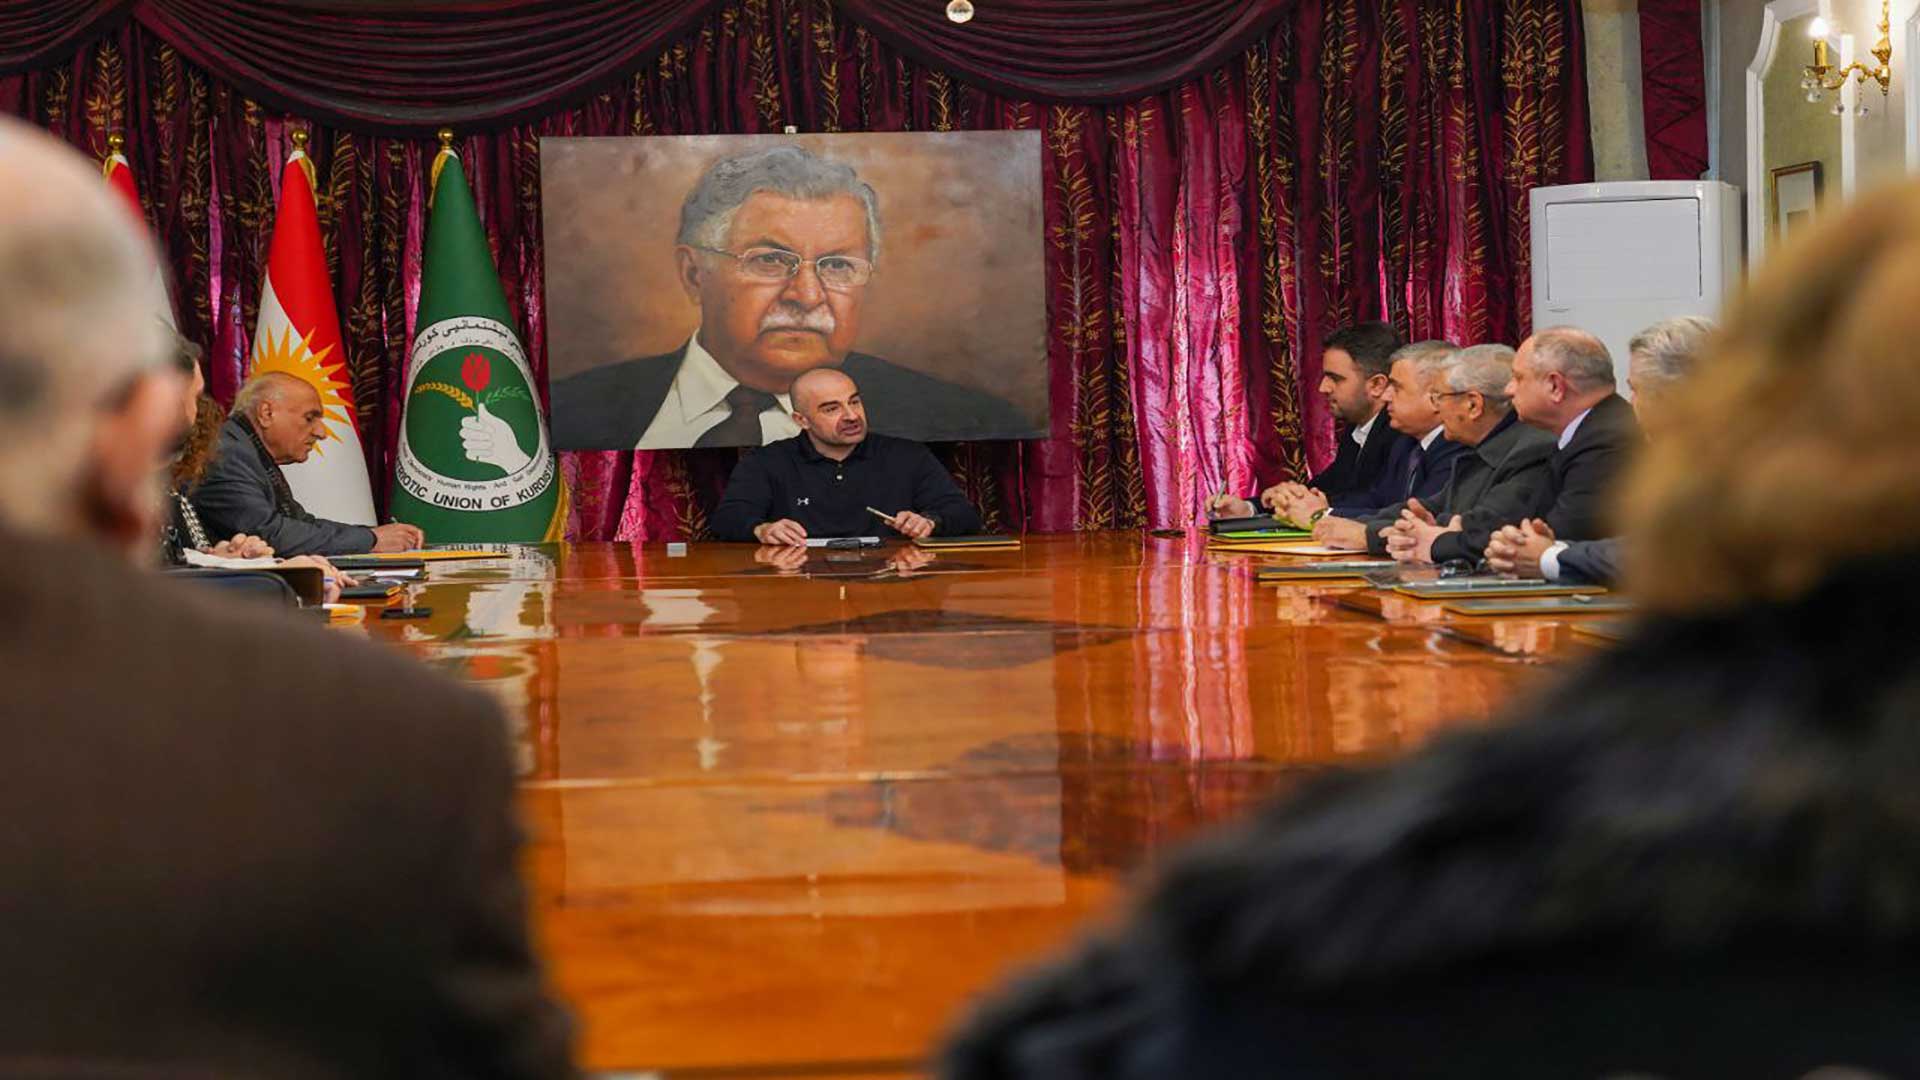 الرئيس بافل جلال طالباني يجتمع مع الفنانين  